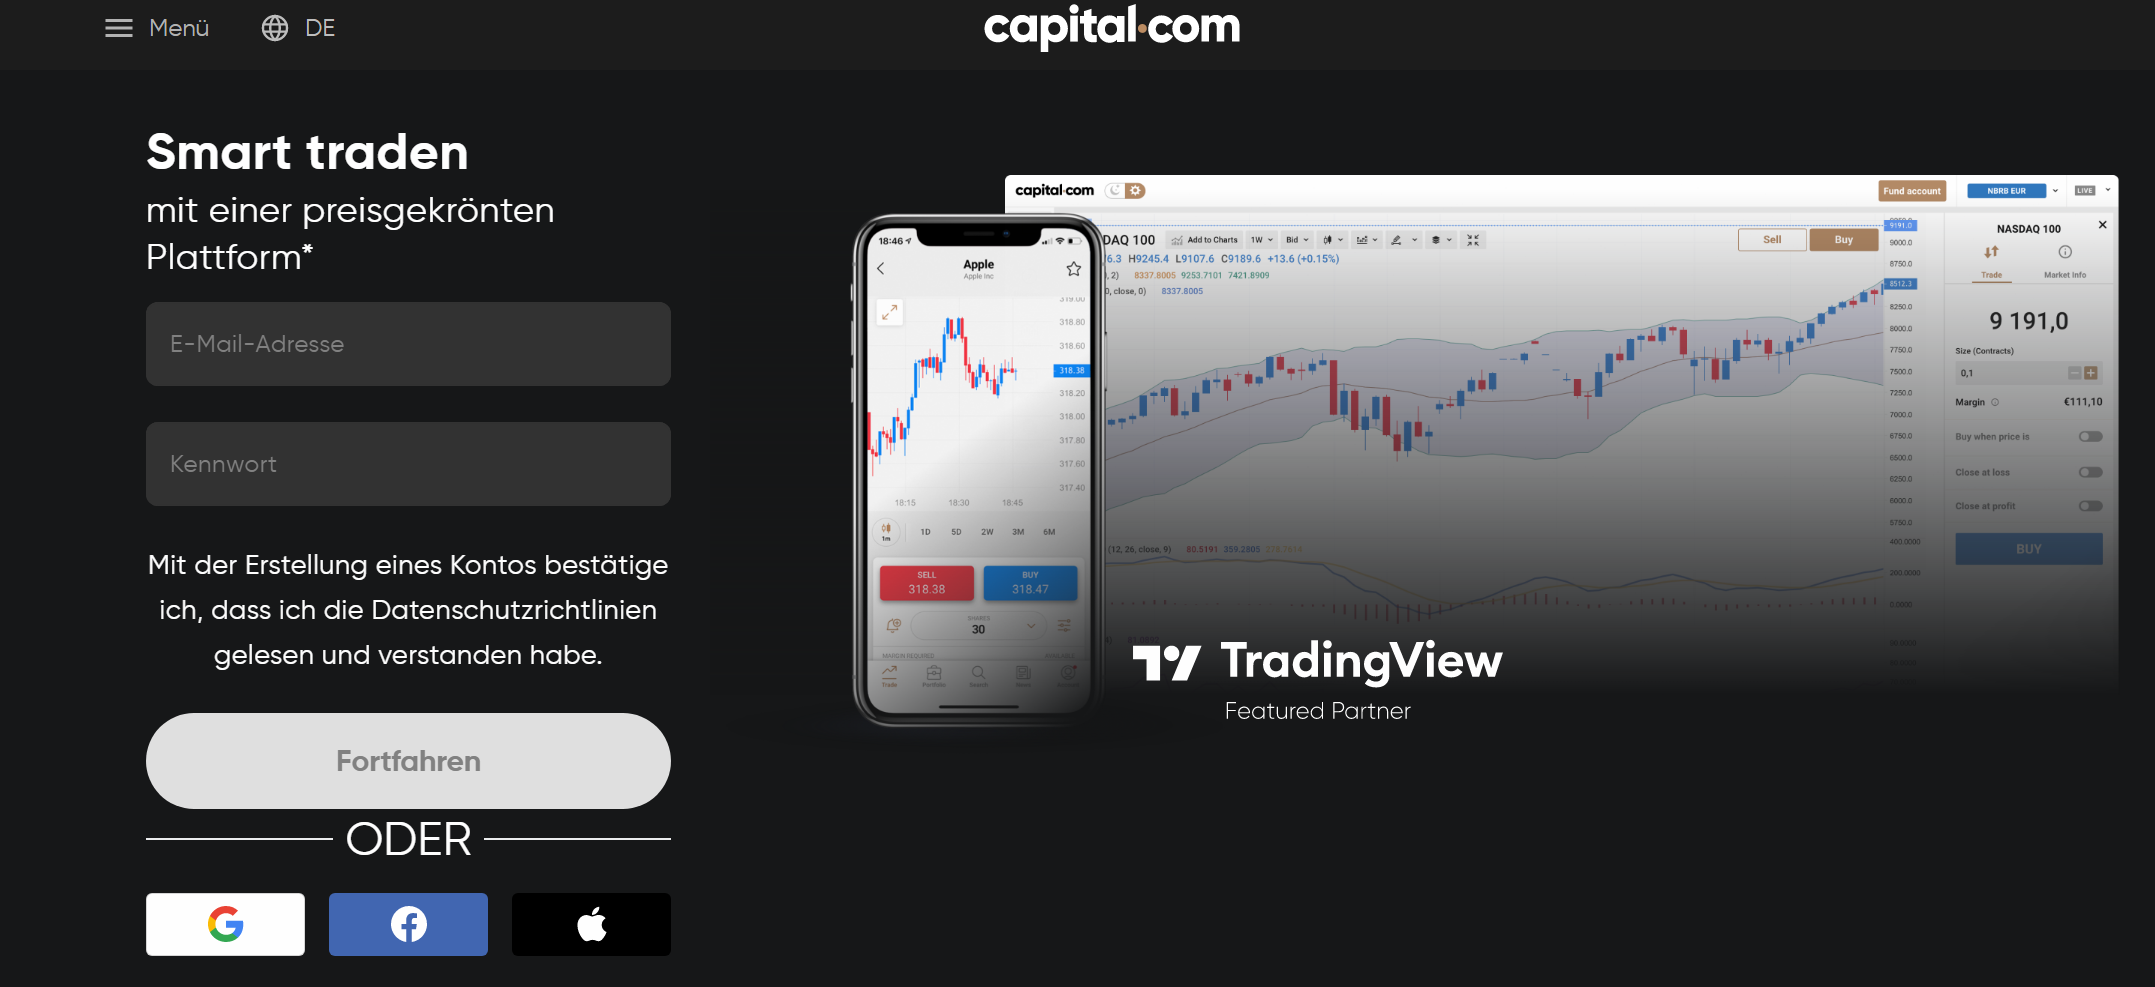 Capital.com und TradingView